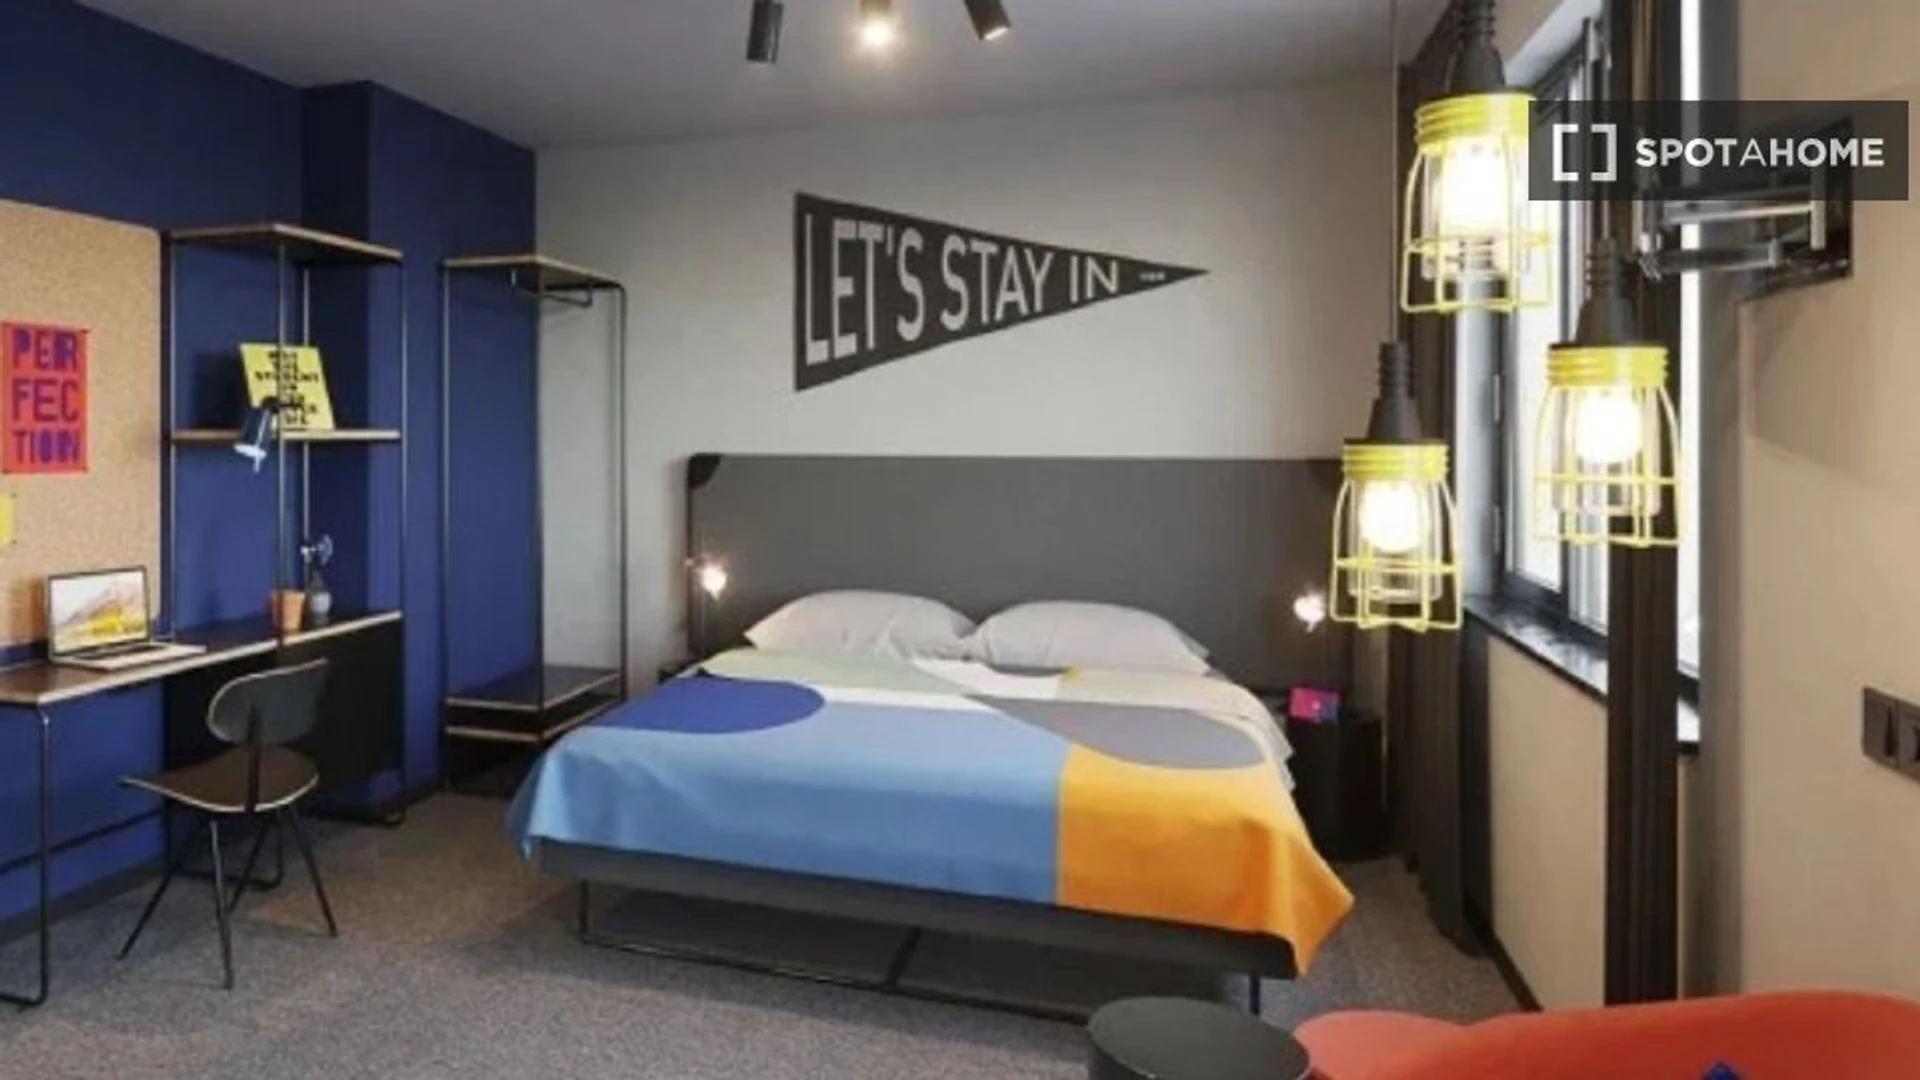 Alquiler de habitaciones por meses en Viena